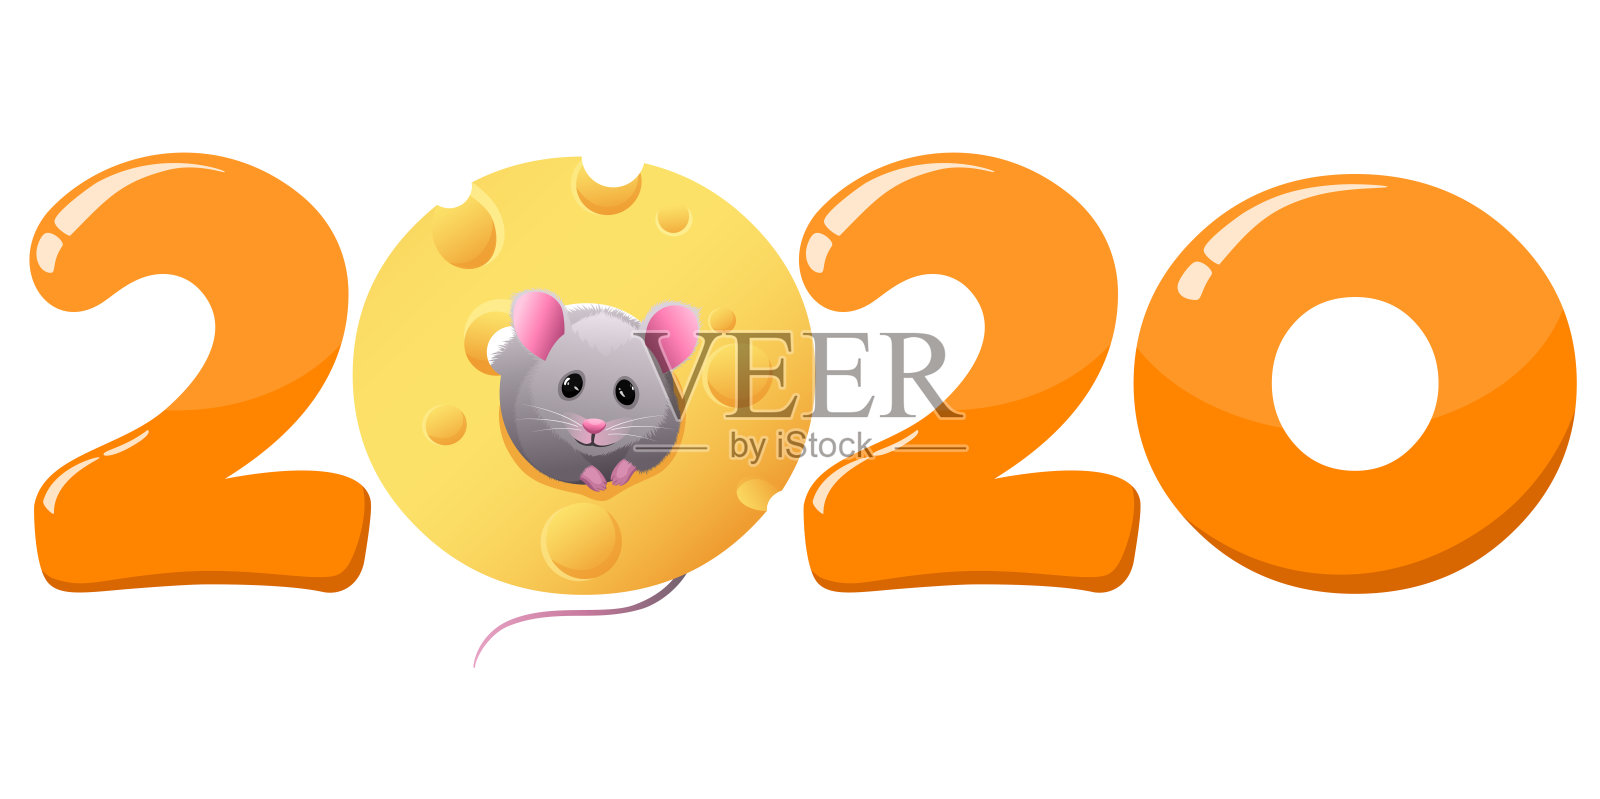 新年卡片上有一个小老鼠象征着一年。插画图片素材